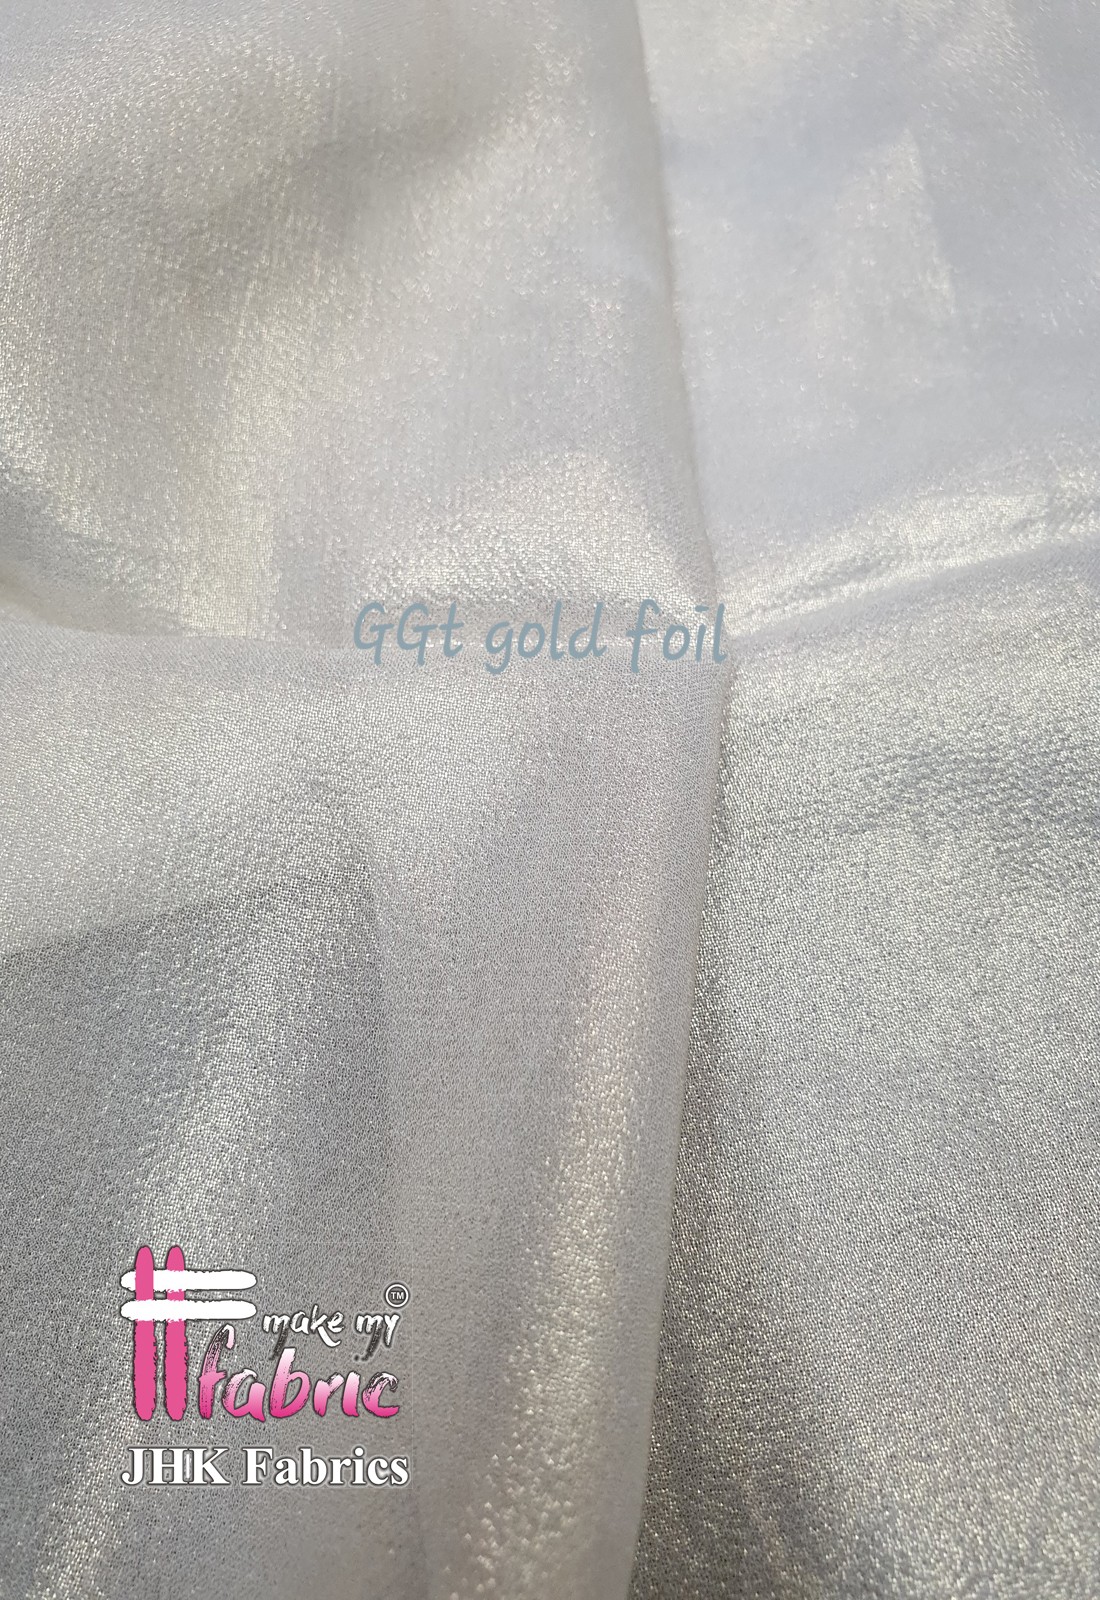 Ggt Gold Foil